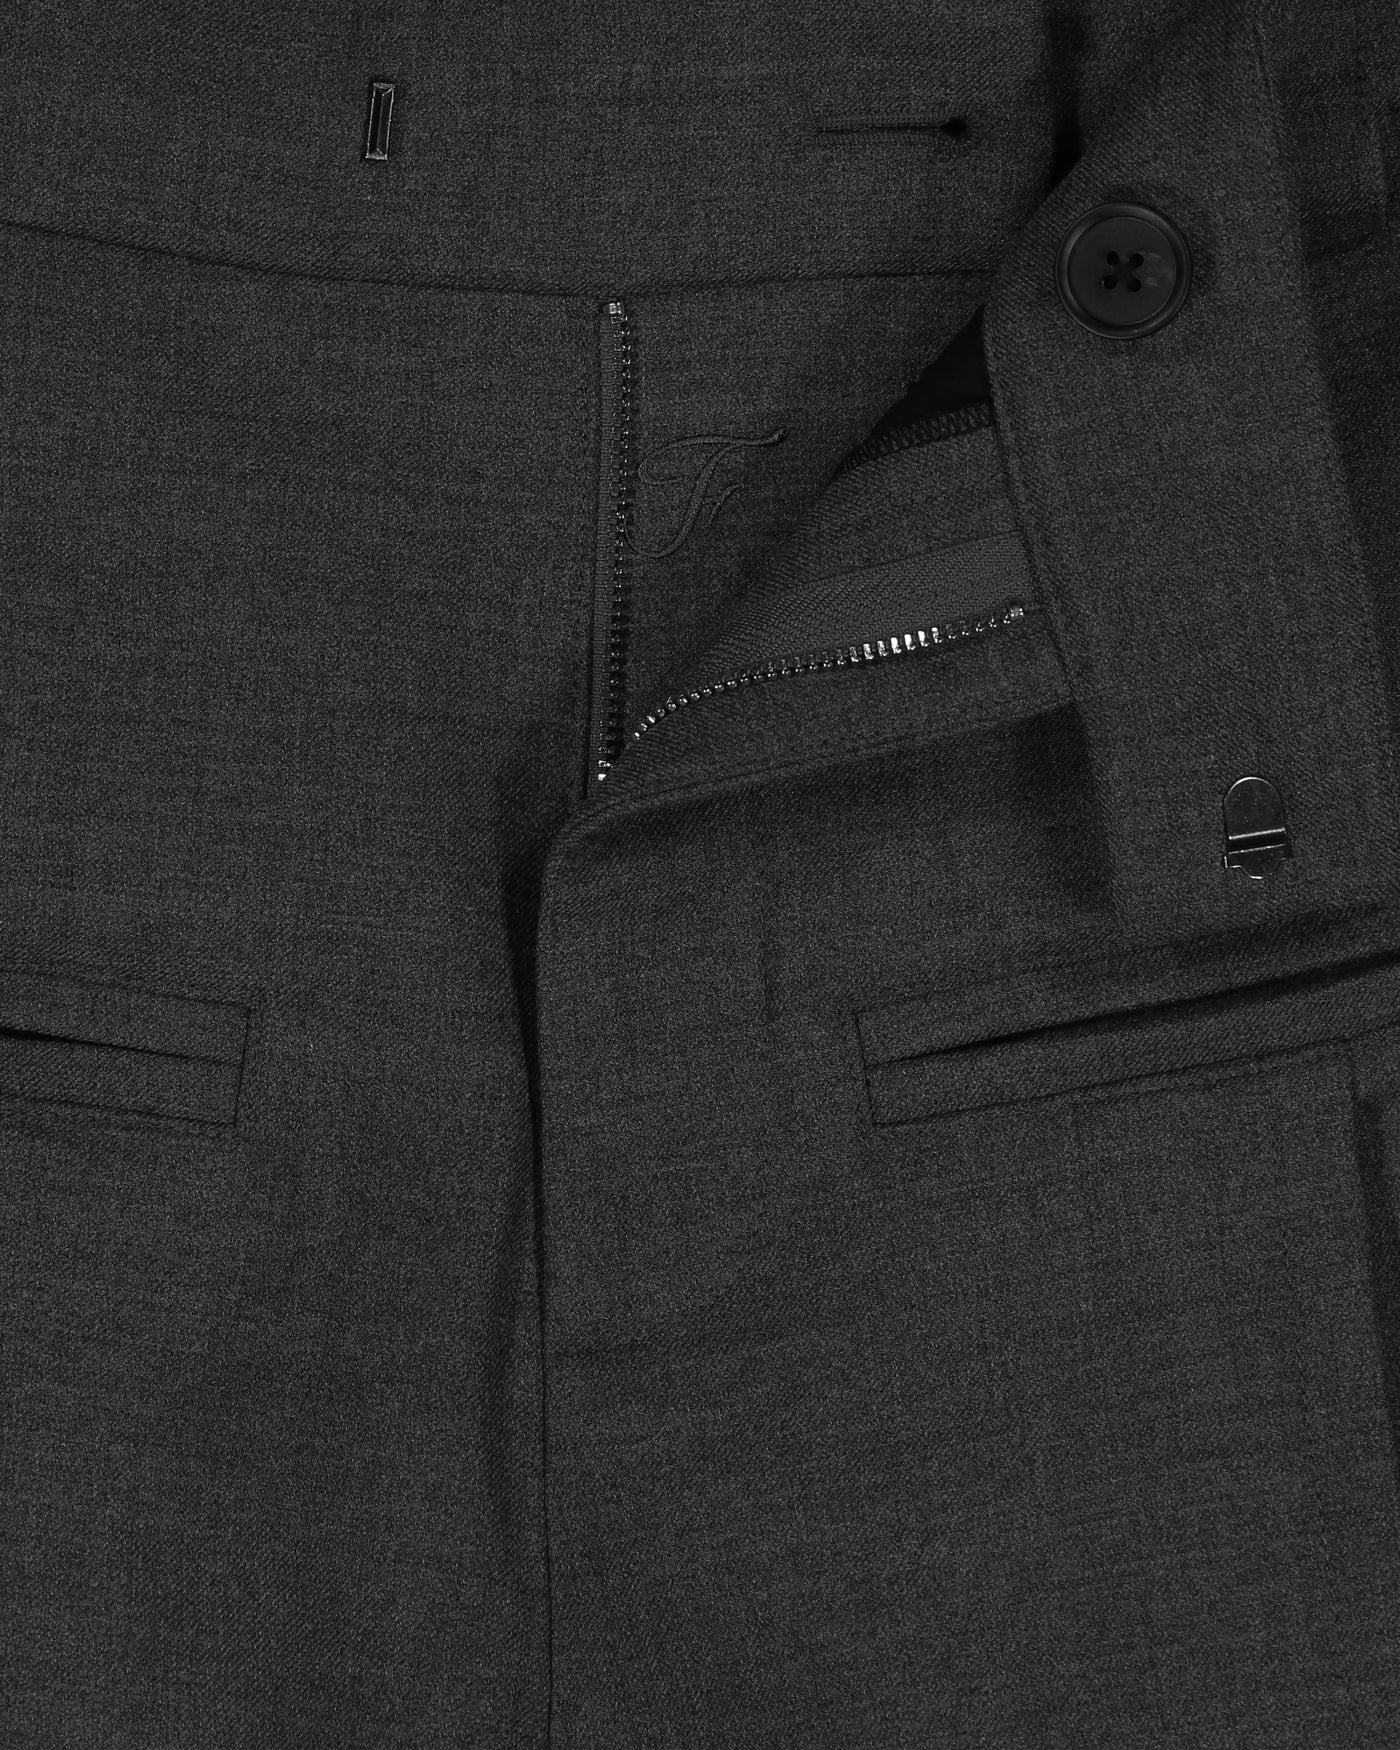 FaxCopyExpress  stitched suit pants